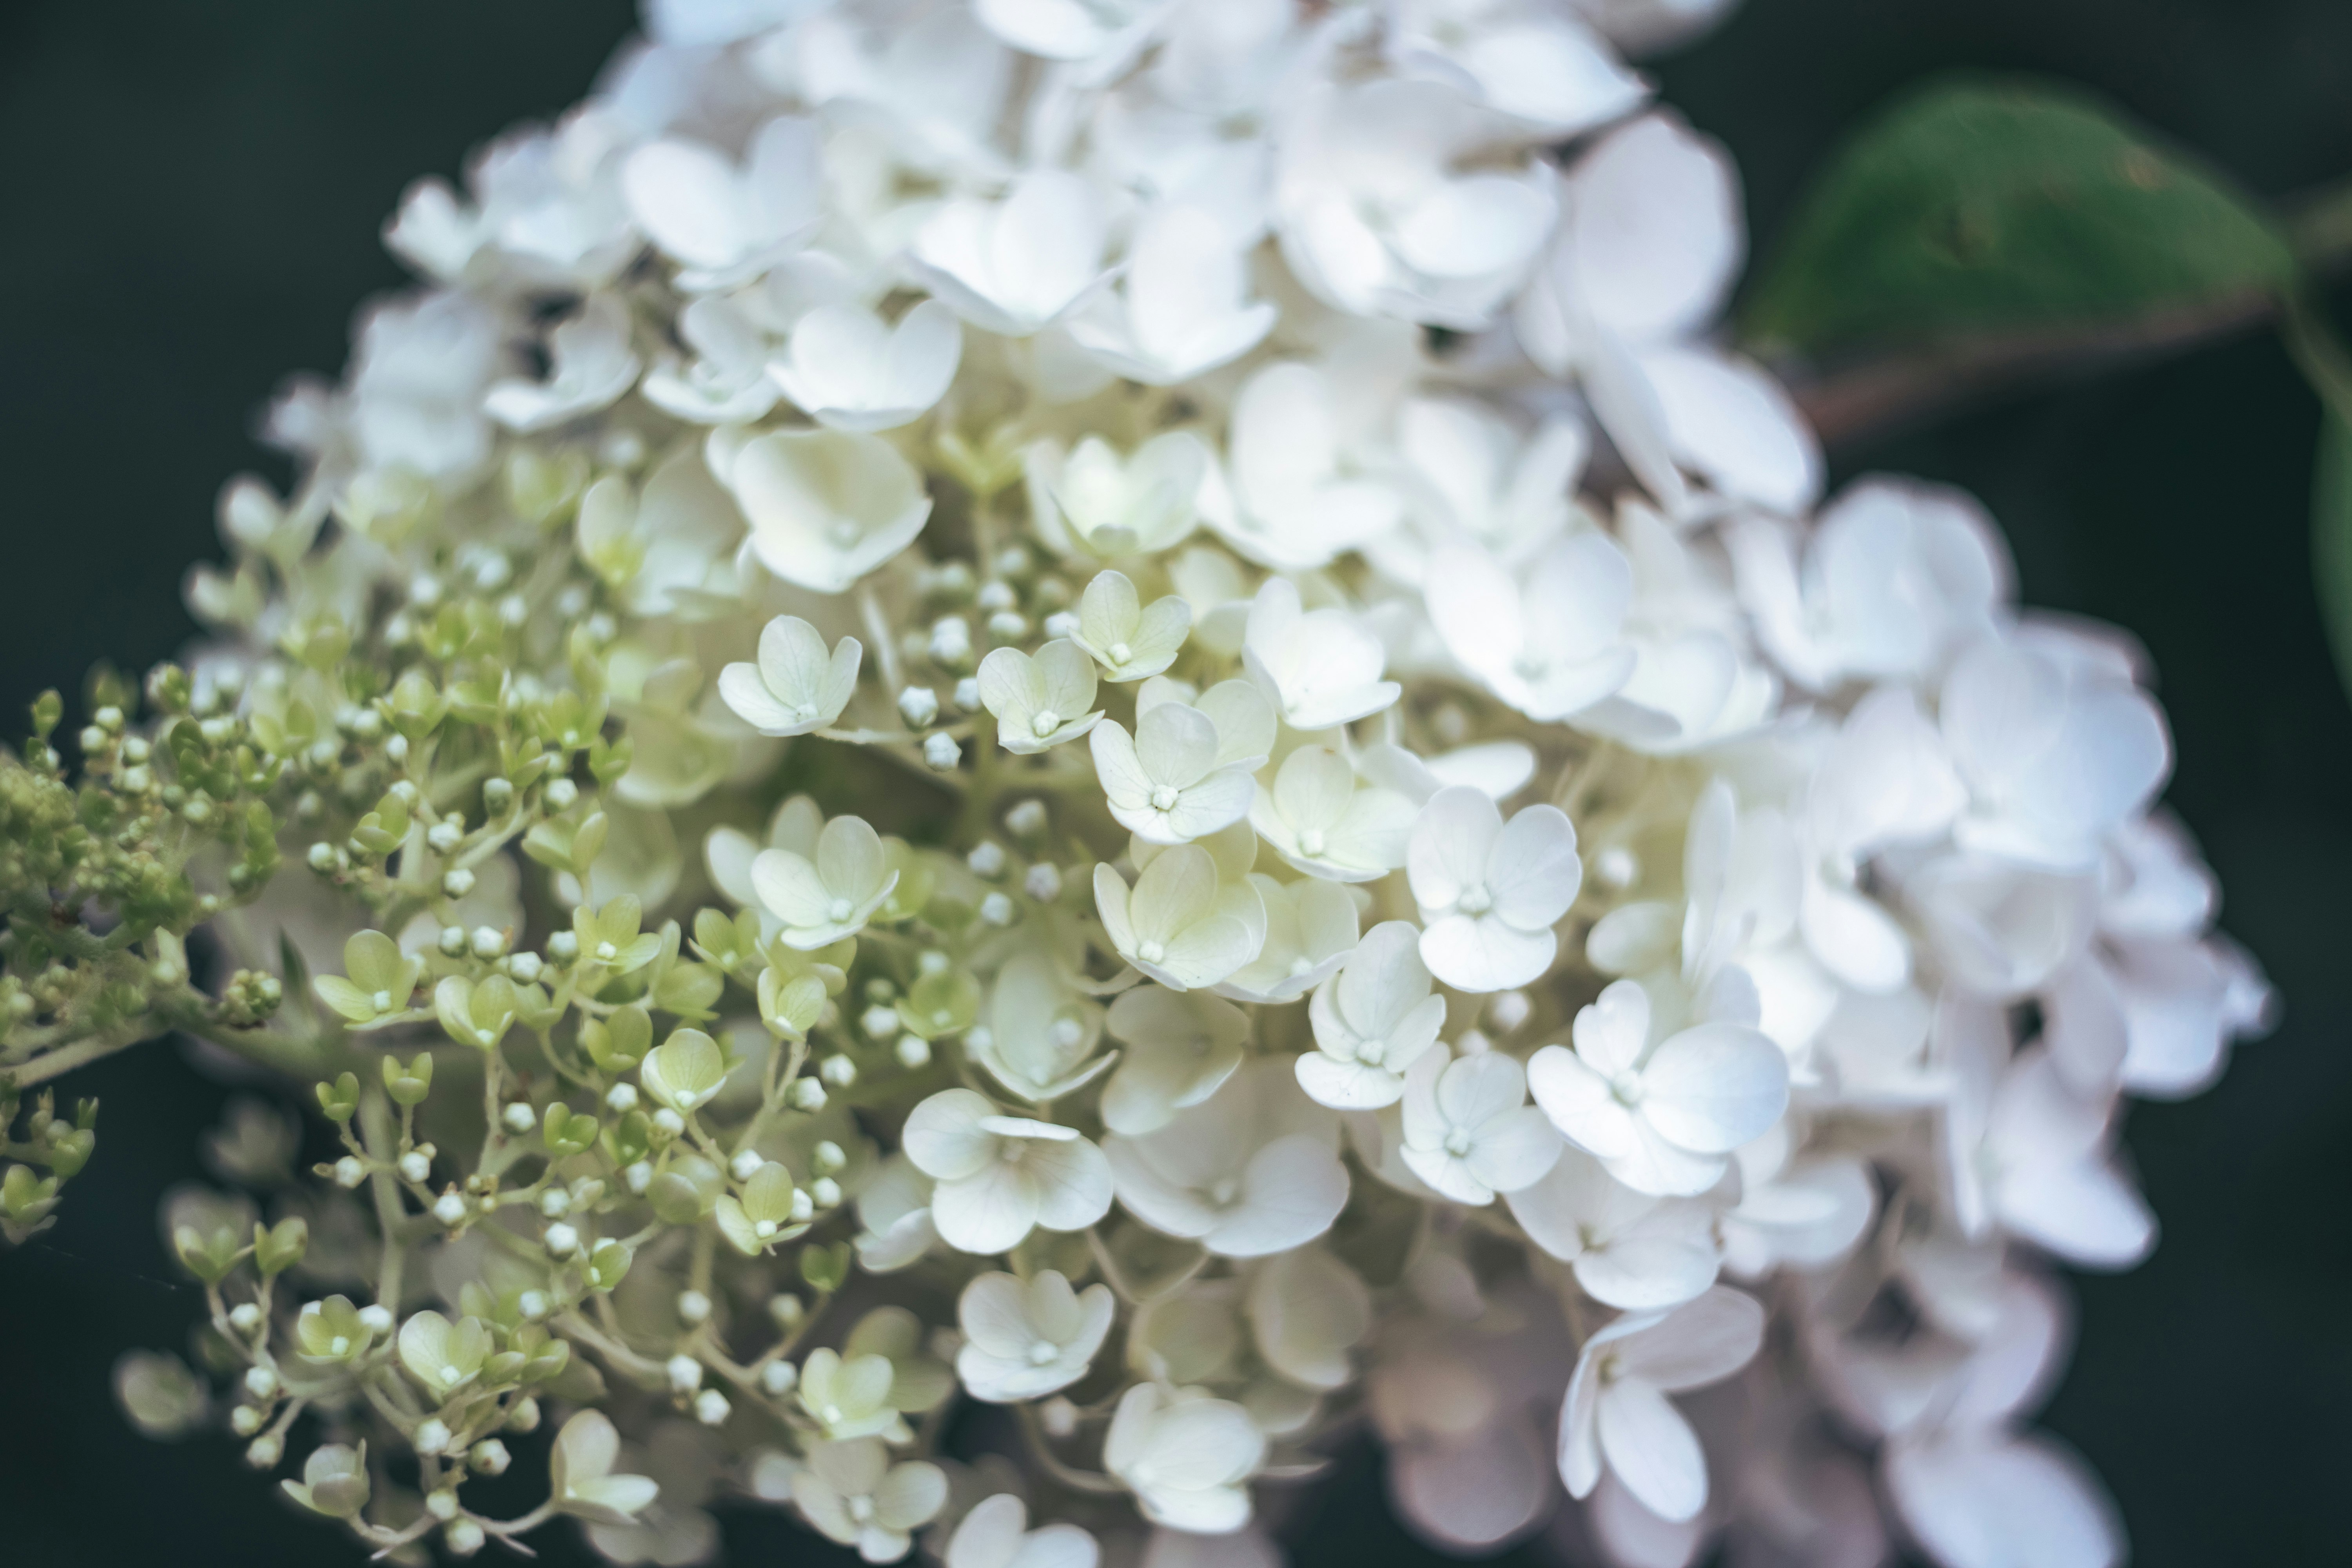 white flowers in tilt shift lens